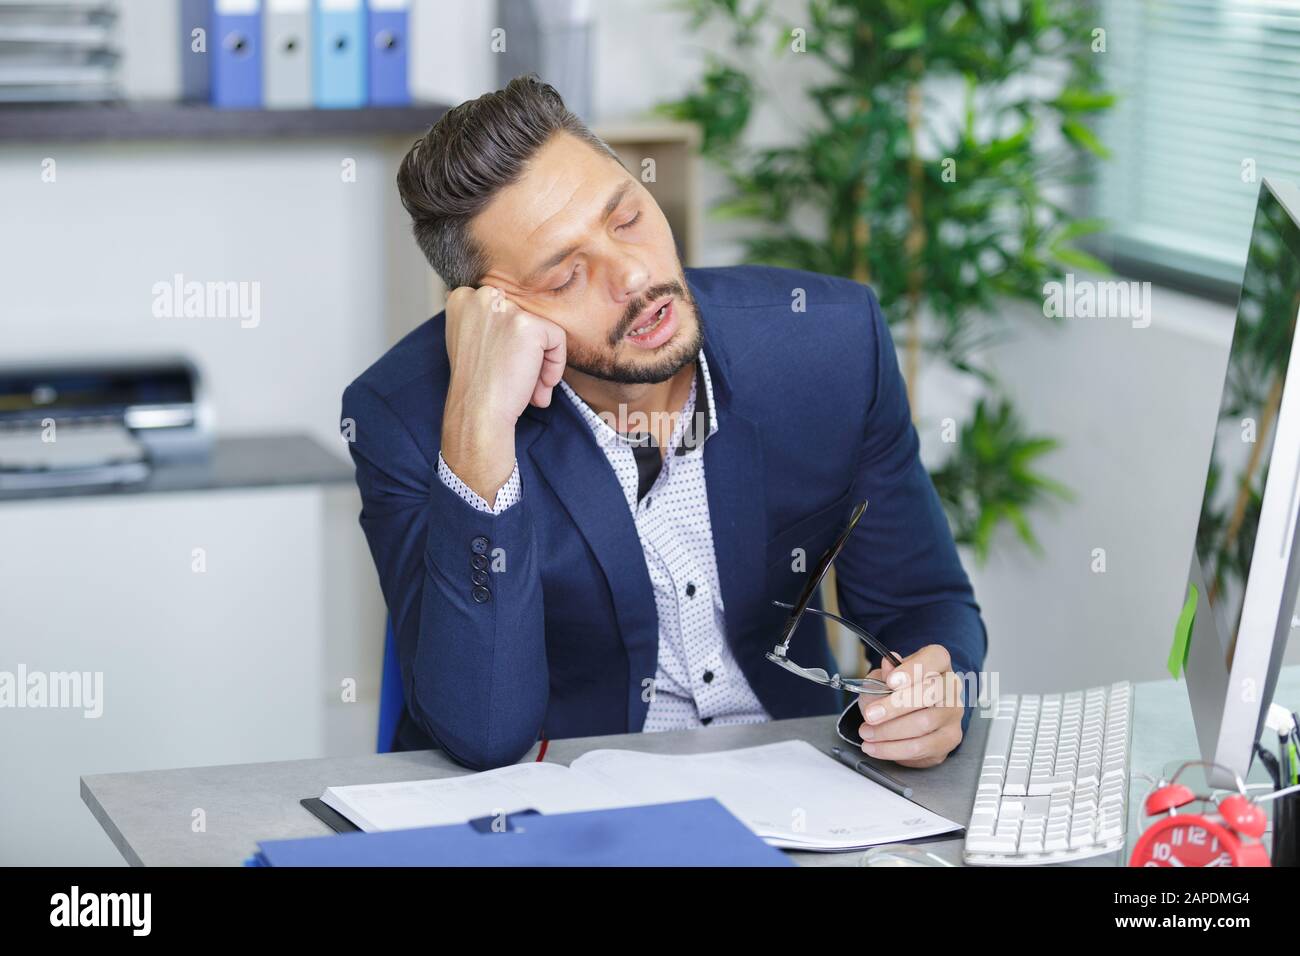 Man Fallen Asleep At Office Desk Stock Photo 340820932 Alamy